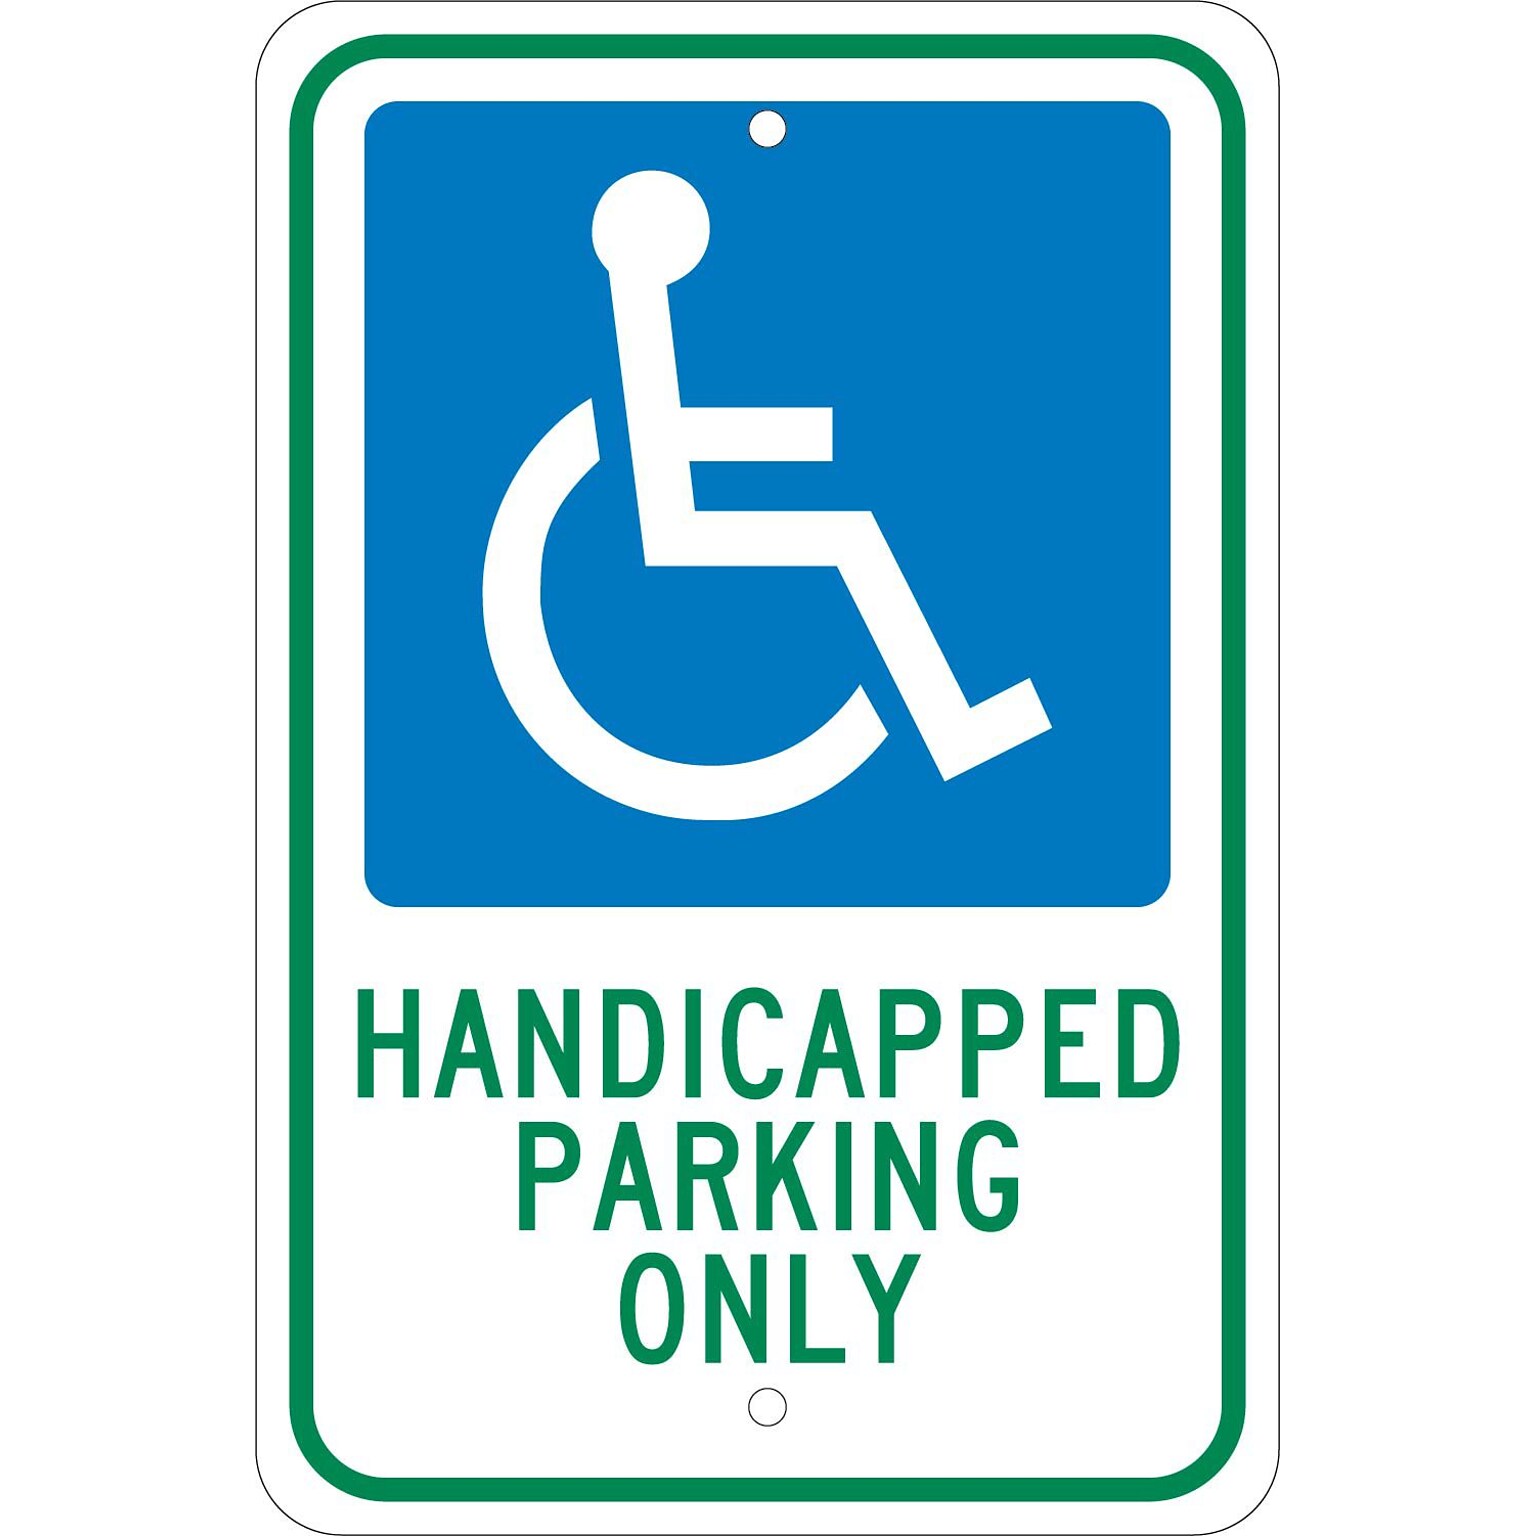 National Marker Reflective Handicapped Parking Only Parking Sign, 18 x 12, Aluminum (TM145J)